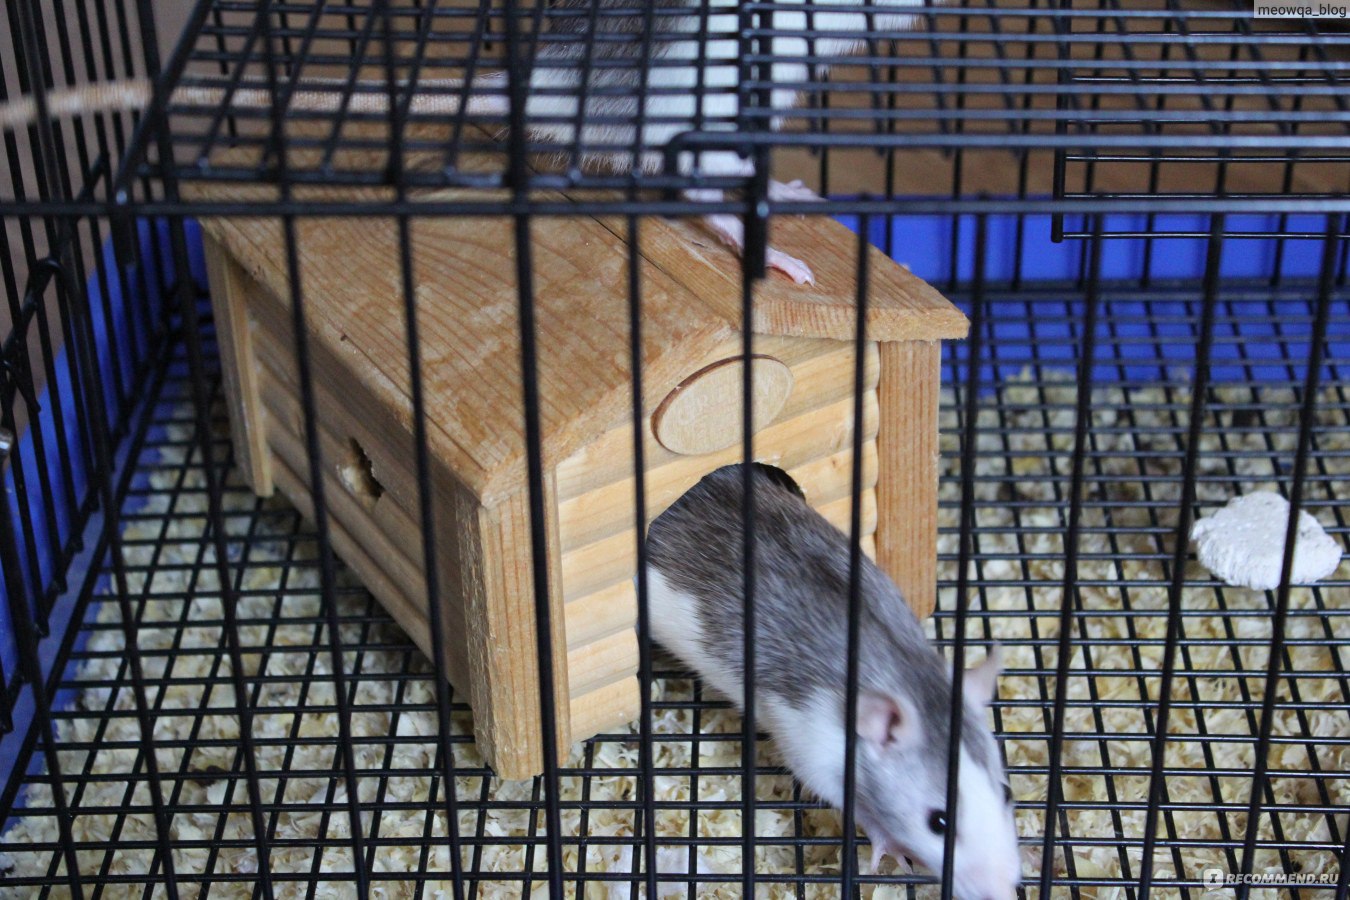 Декоративная крыса дамбо — информация о породе